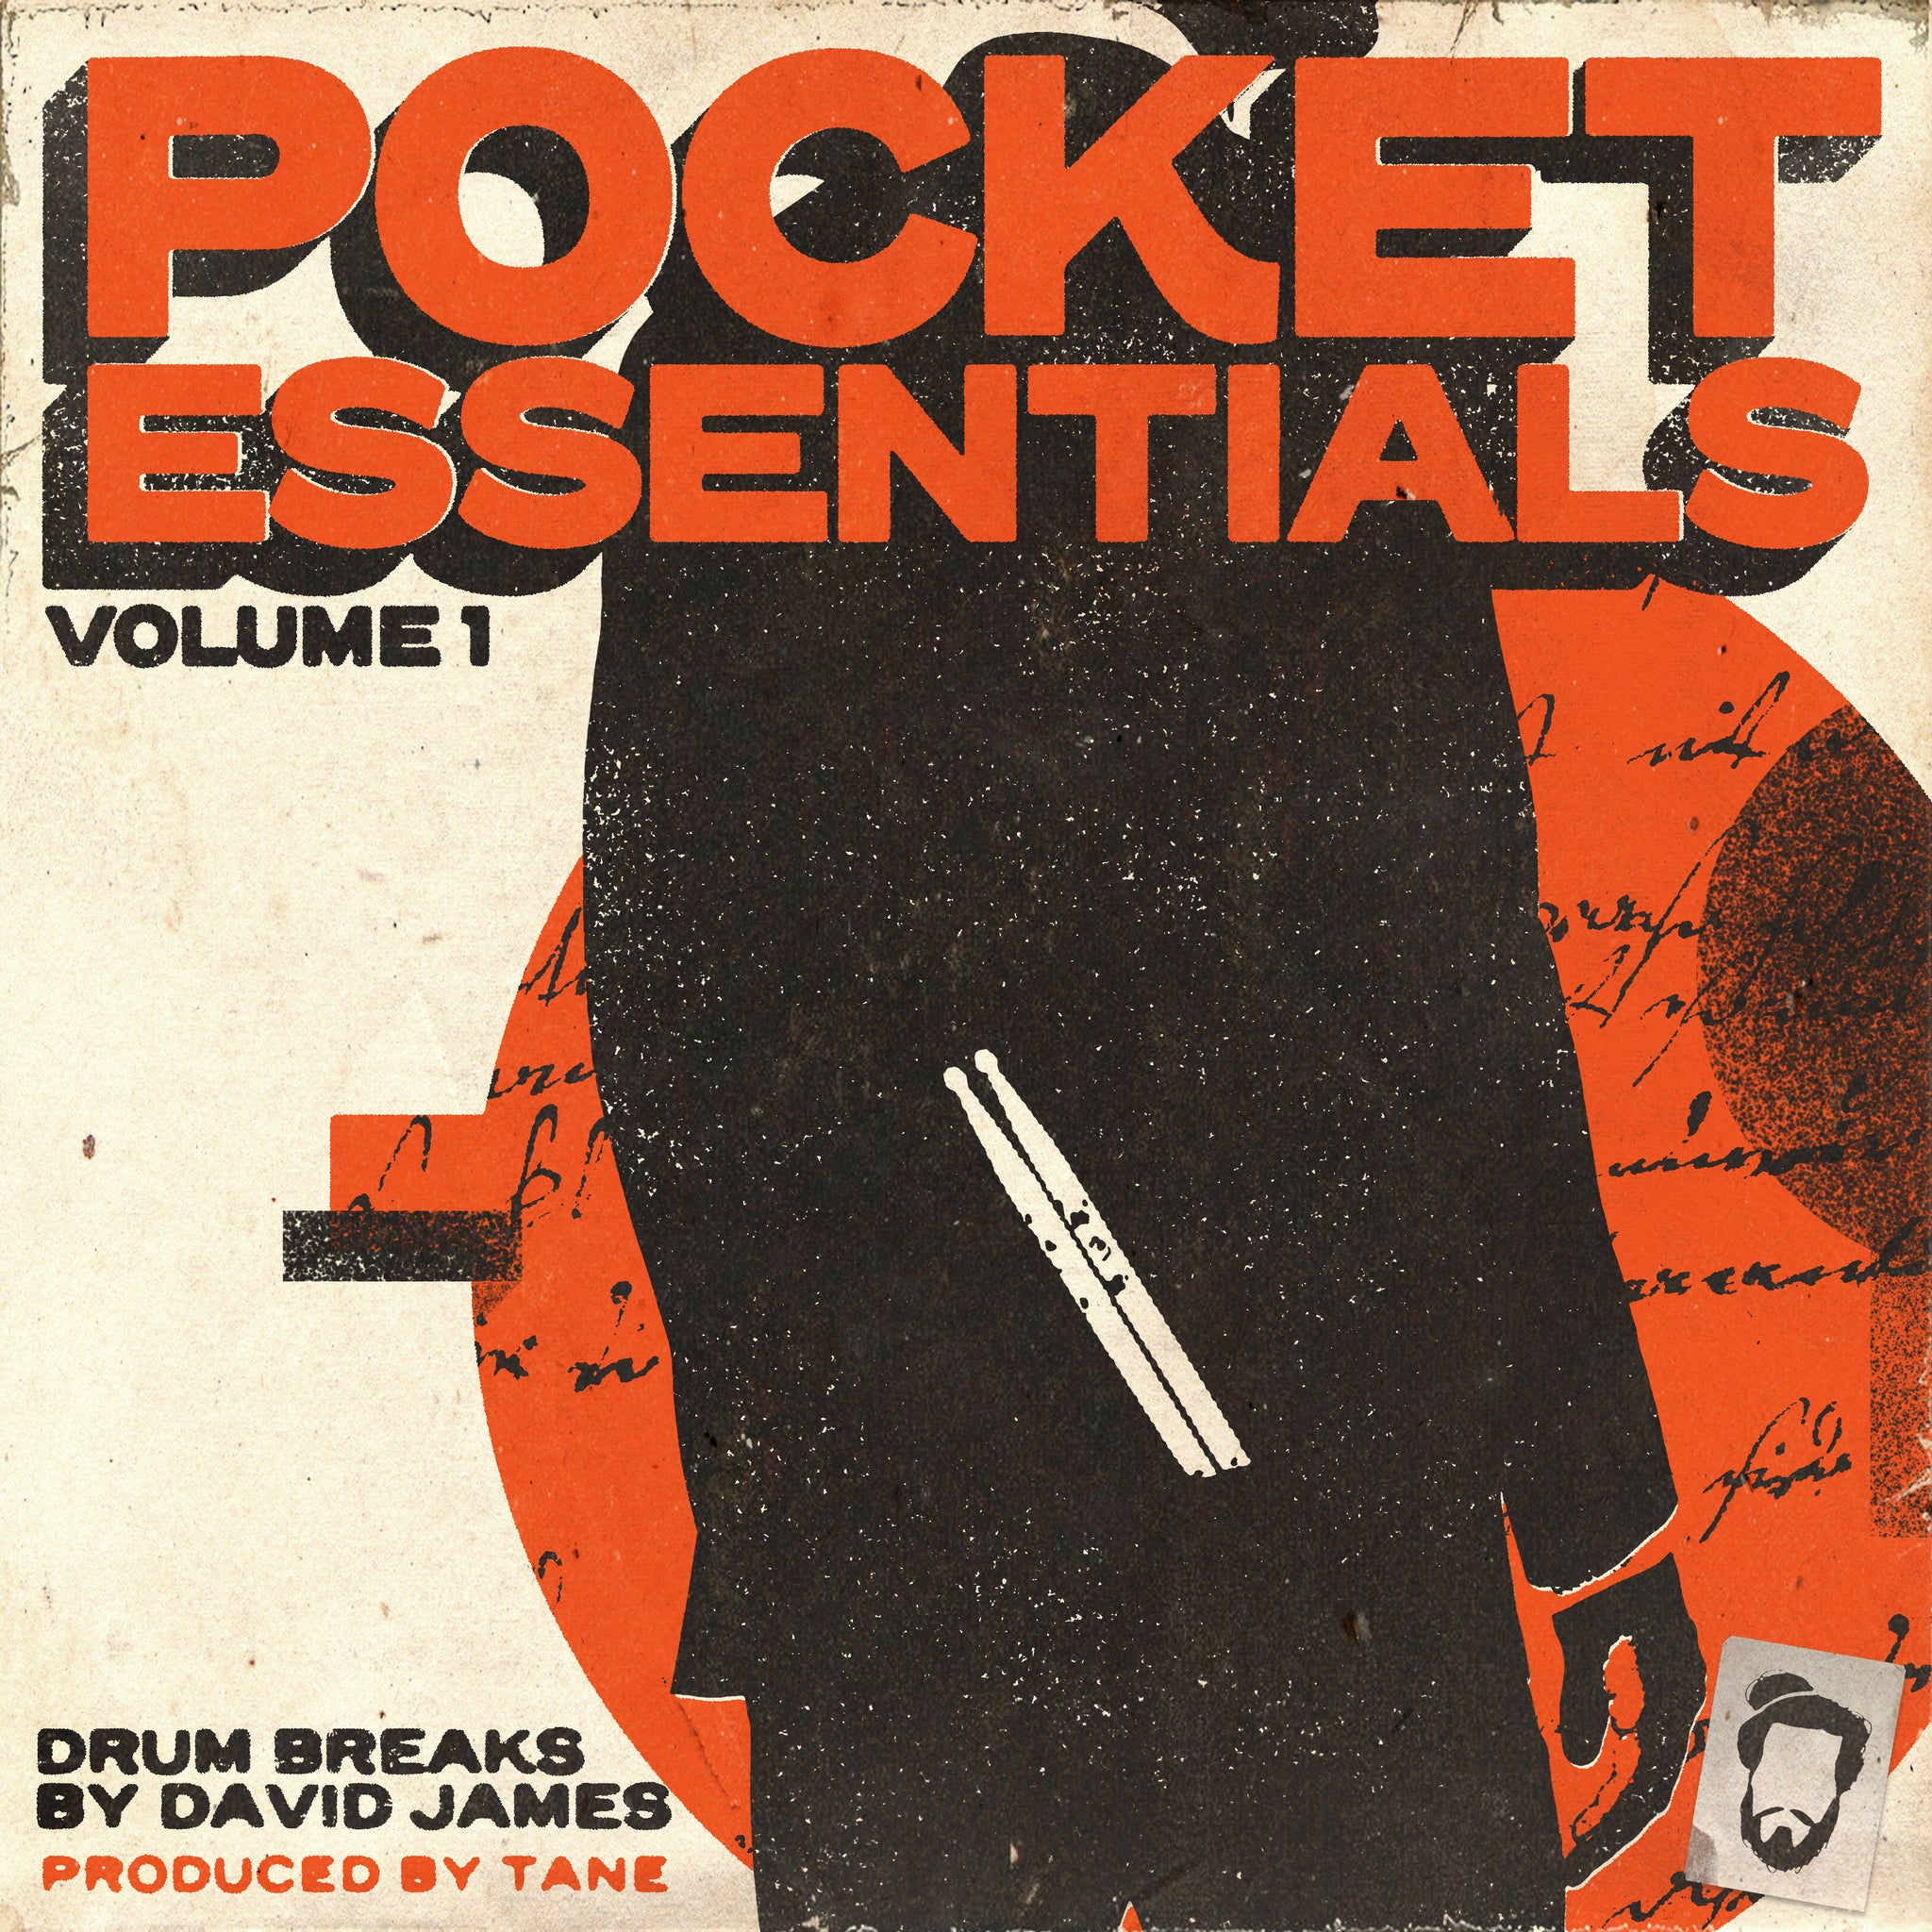 Pocket Essentials Vol. 1